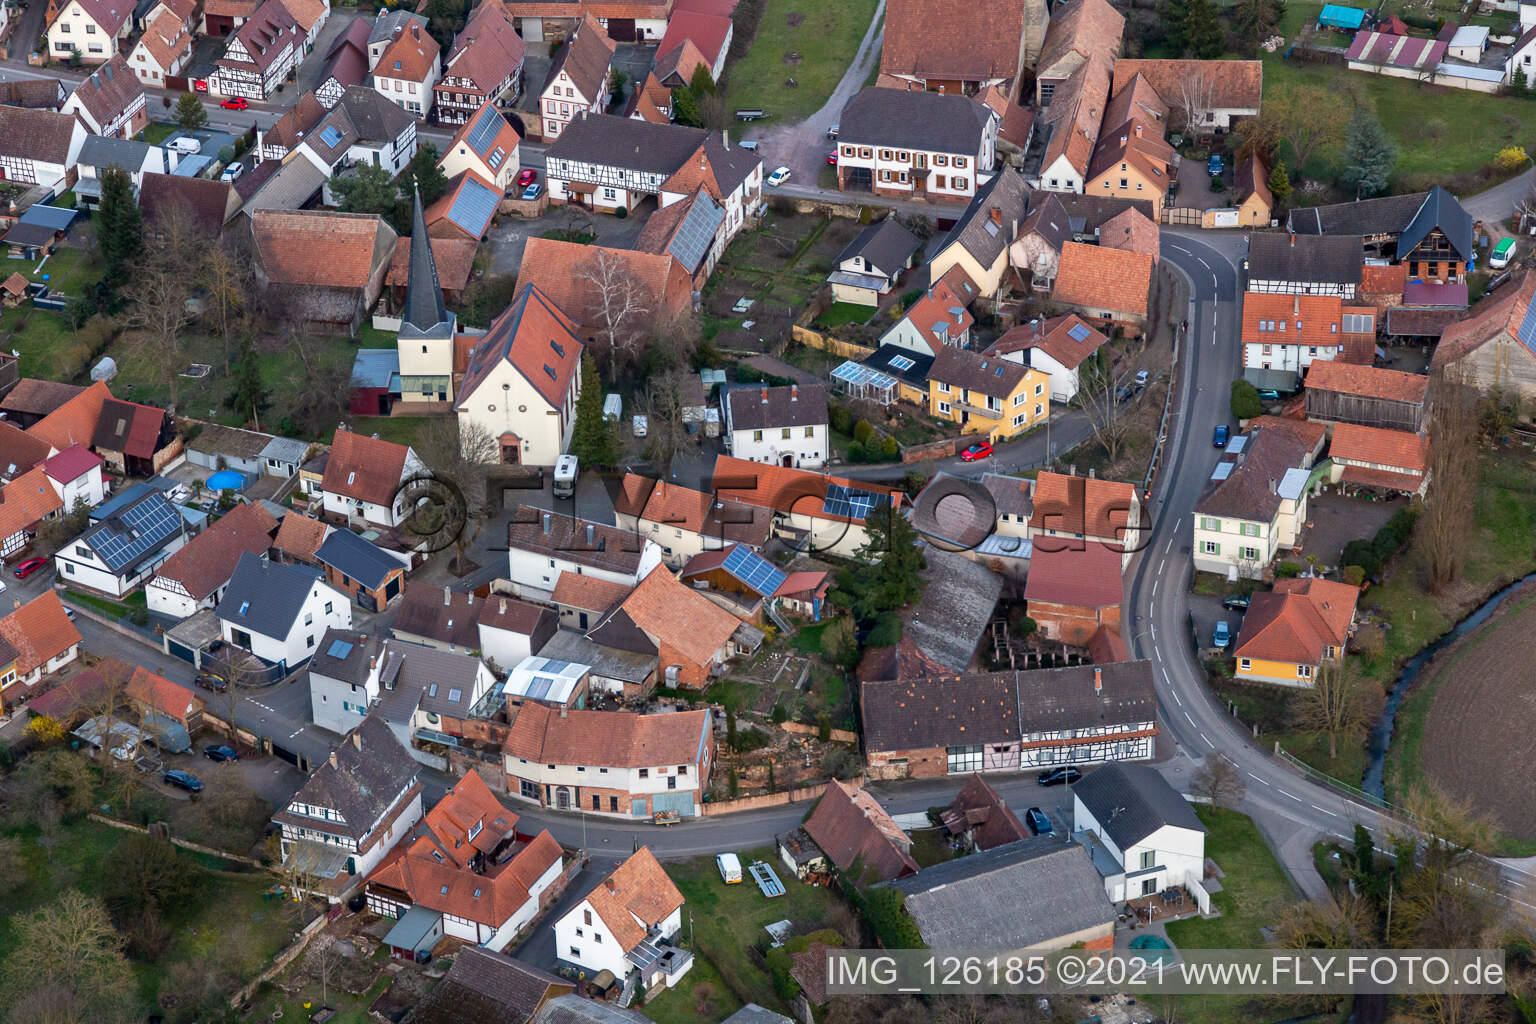 Vue aérienne de Église protestante à Barbelroth dans le département Rhénanie-Palatinat, Allemagne